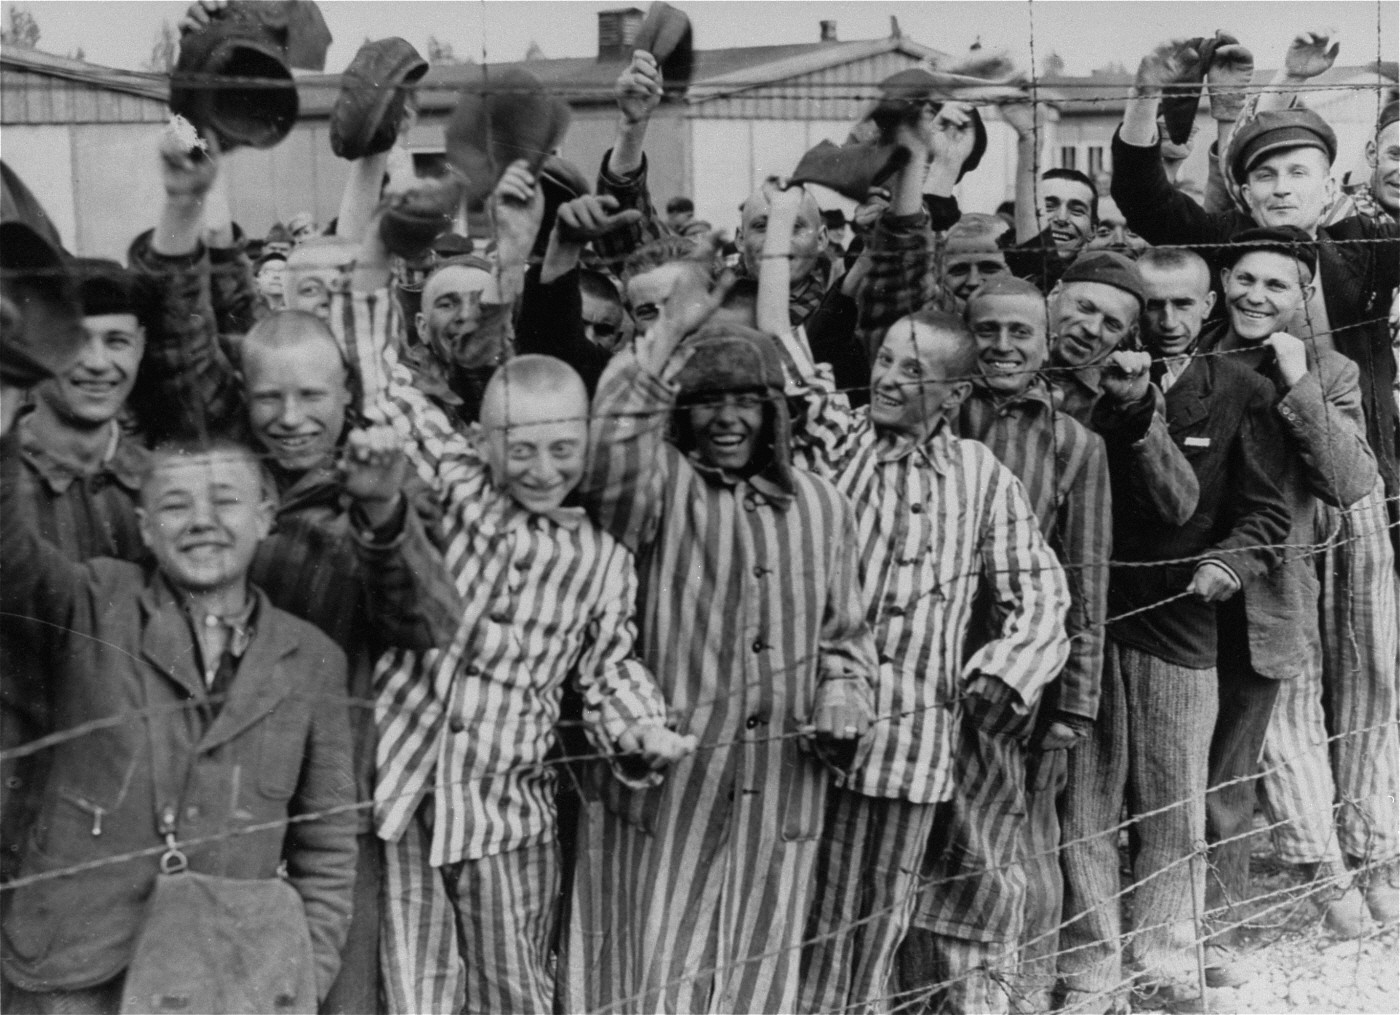 1945: Amerikanische Truppen befreien das KZ Dachau nordwestlich von München. Das Bild wurde am Tag der Befreiuung aufgenommen. Das KZ war kurz nach der Machtergreifung Hitlers im Jahr 1933 errichtet worden. Es war bis Kriegsende, also zwölf Jahre lang, ununterbrochen in Betrieb. Insgesamt waren in Dachau über 200’000 Menschen inhaftiert, 41’500 starben. Als die amerikanische Truppen das KZ befreien, befinden sich noch 32'000 Häflinge im Lager. In einem Eisenbahnwagen, der neben dem Lager steht, stossen die…